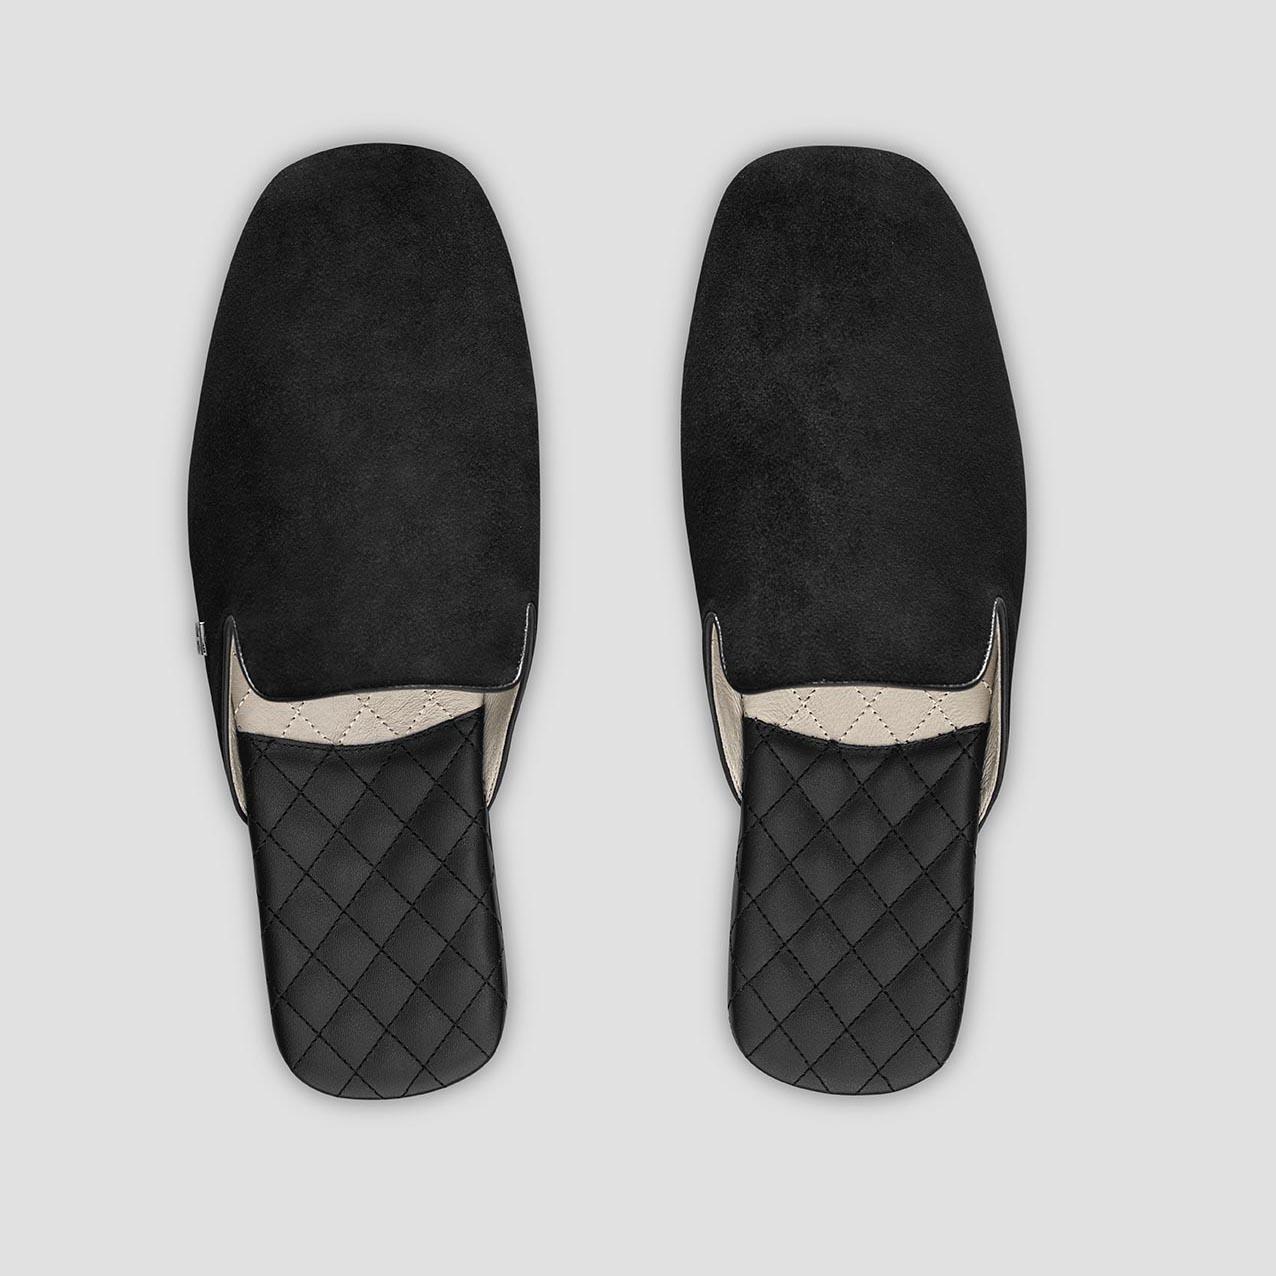 Тапочки Togas Реон черные мужские кожаные, размер 40-41 реснички набор 2 шт размер 1 шт 20 × 1 см чёрный